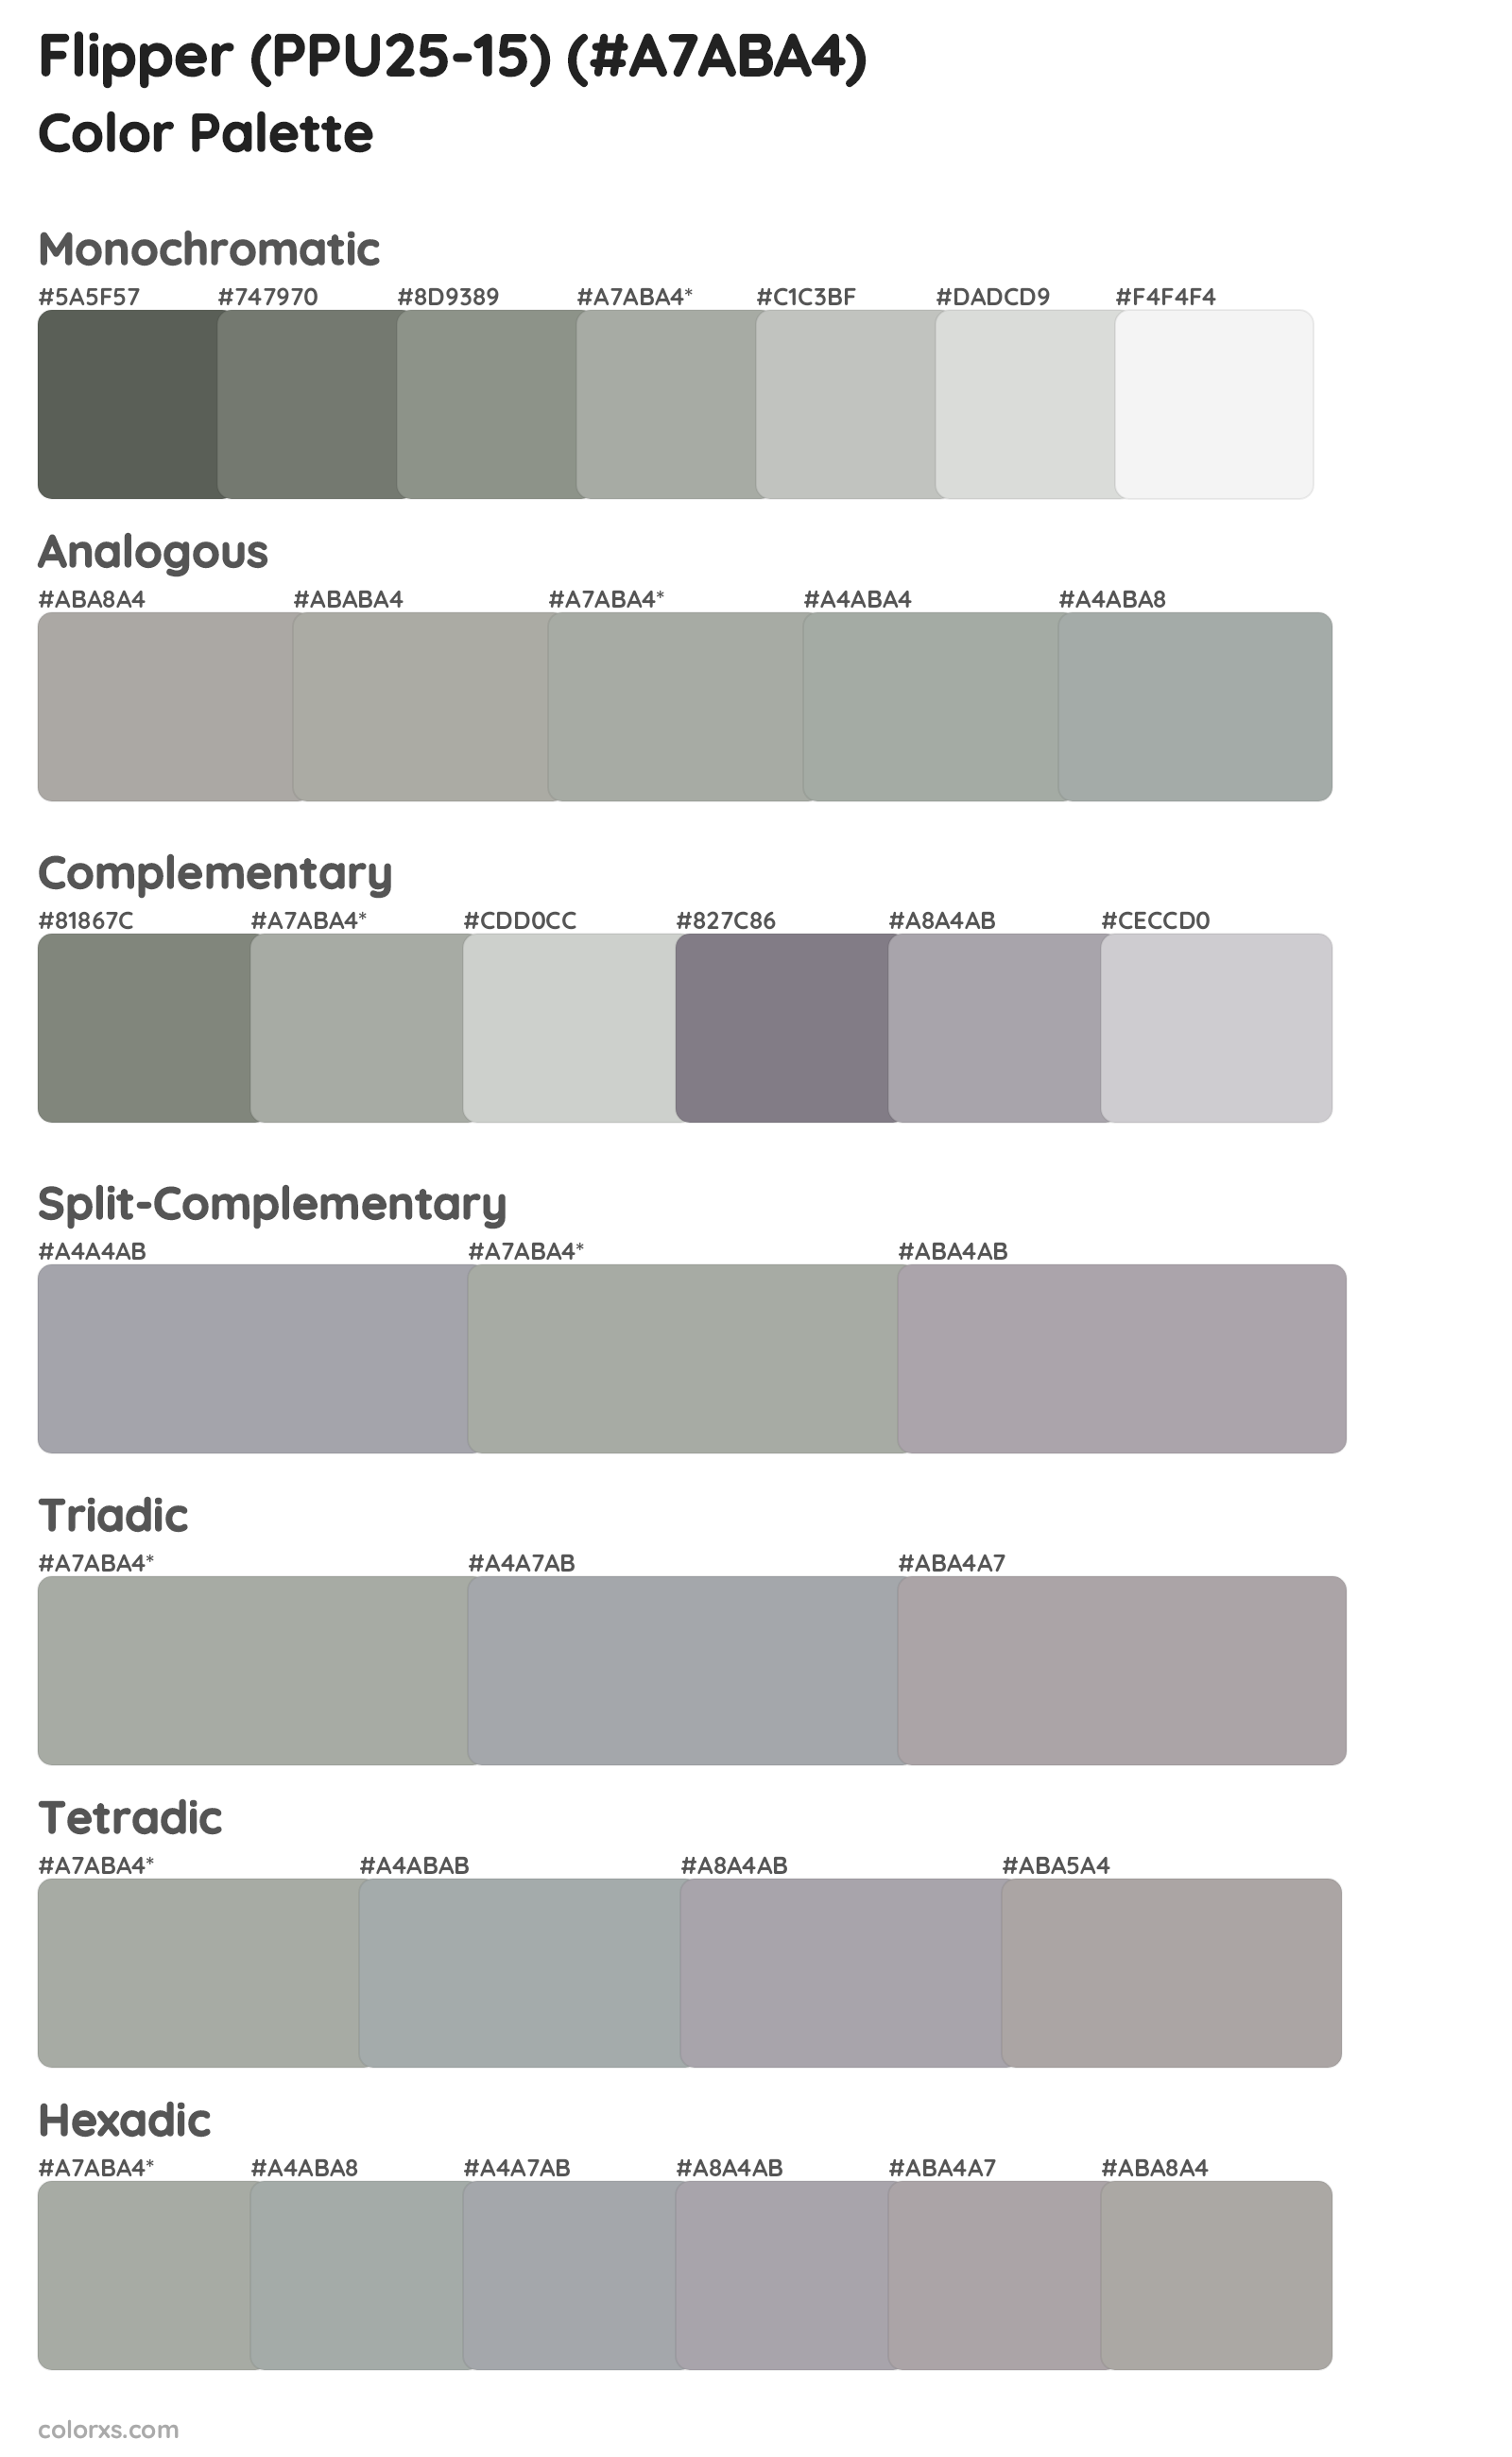 Flipper (PPU25-15) Color Scheme Palettes